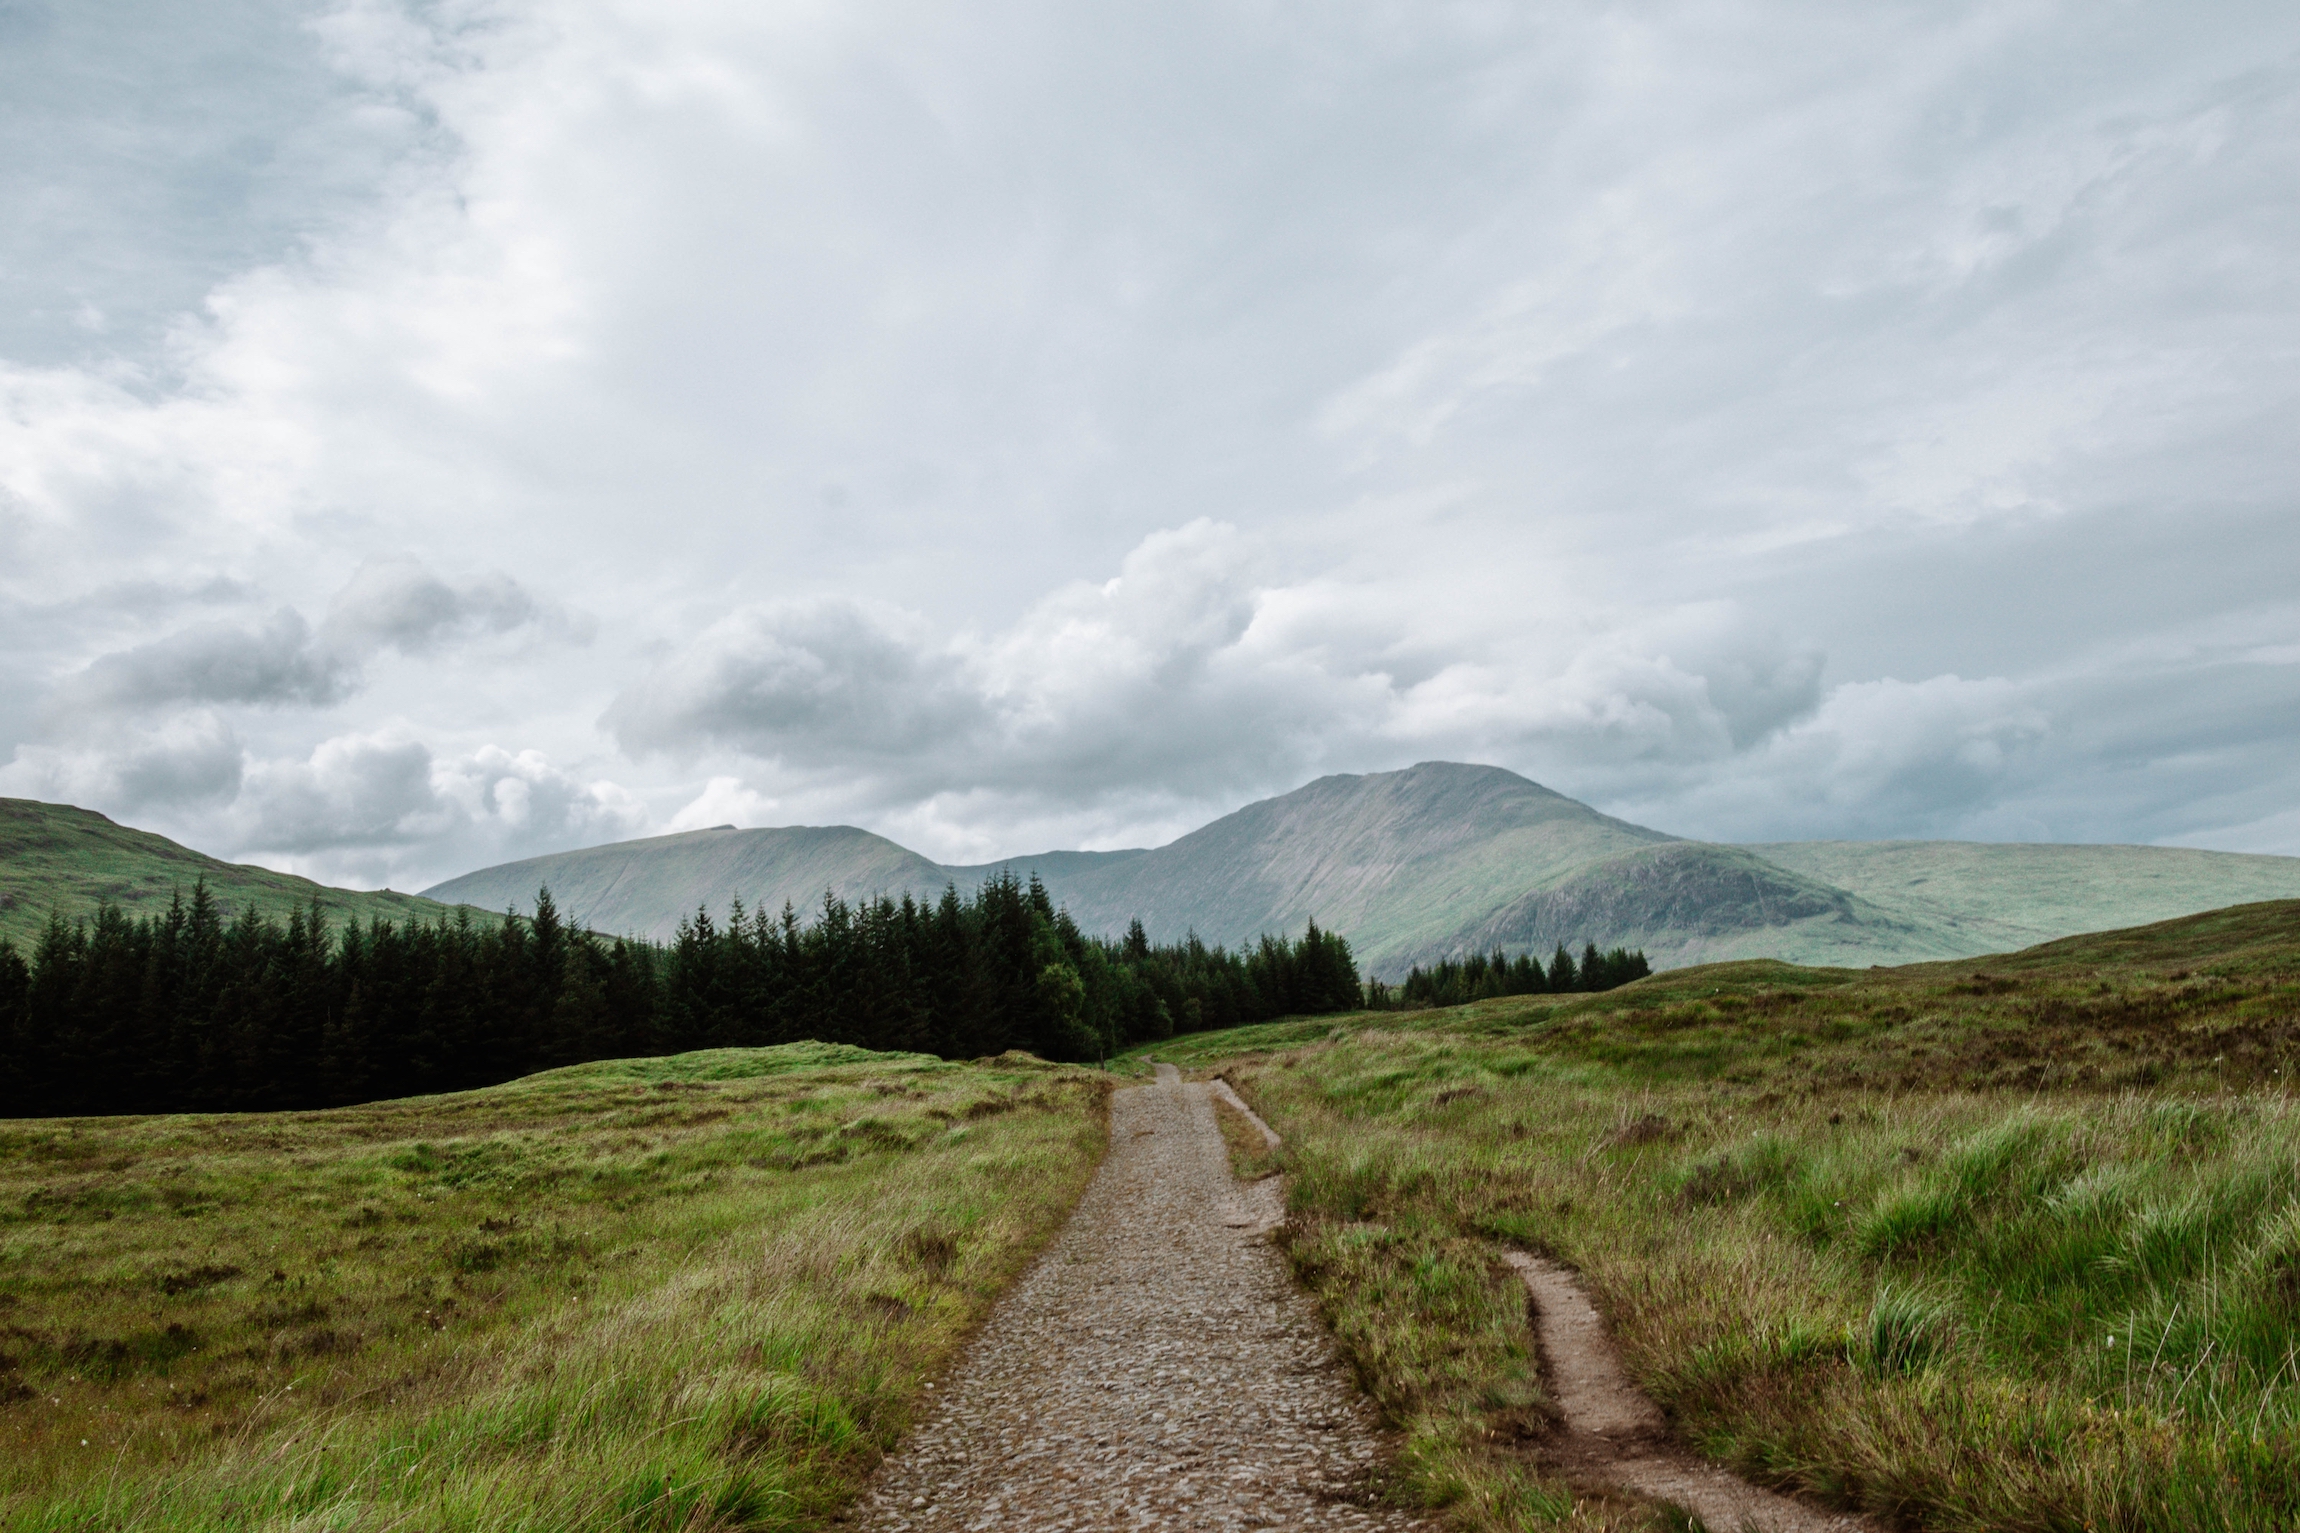 Szlak West Highland Way w górach i wrzosowiskach w Highlands w Szkocji, Wielka Brytania. 